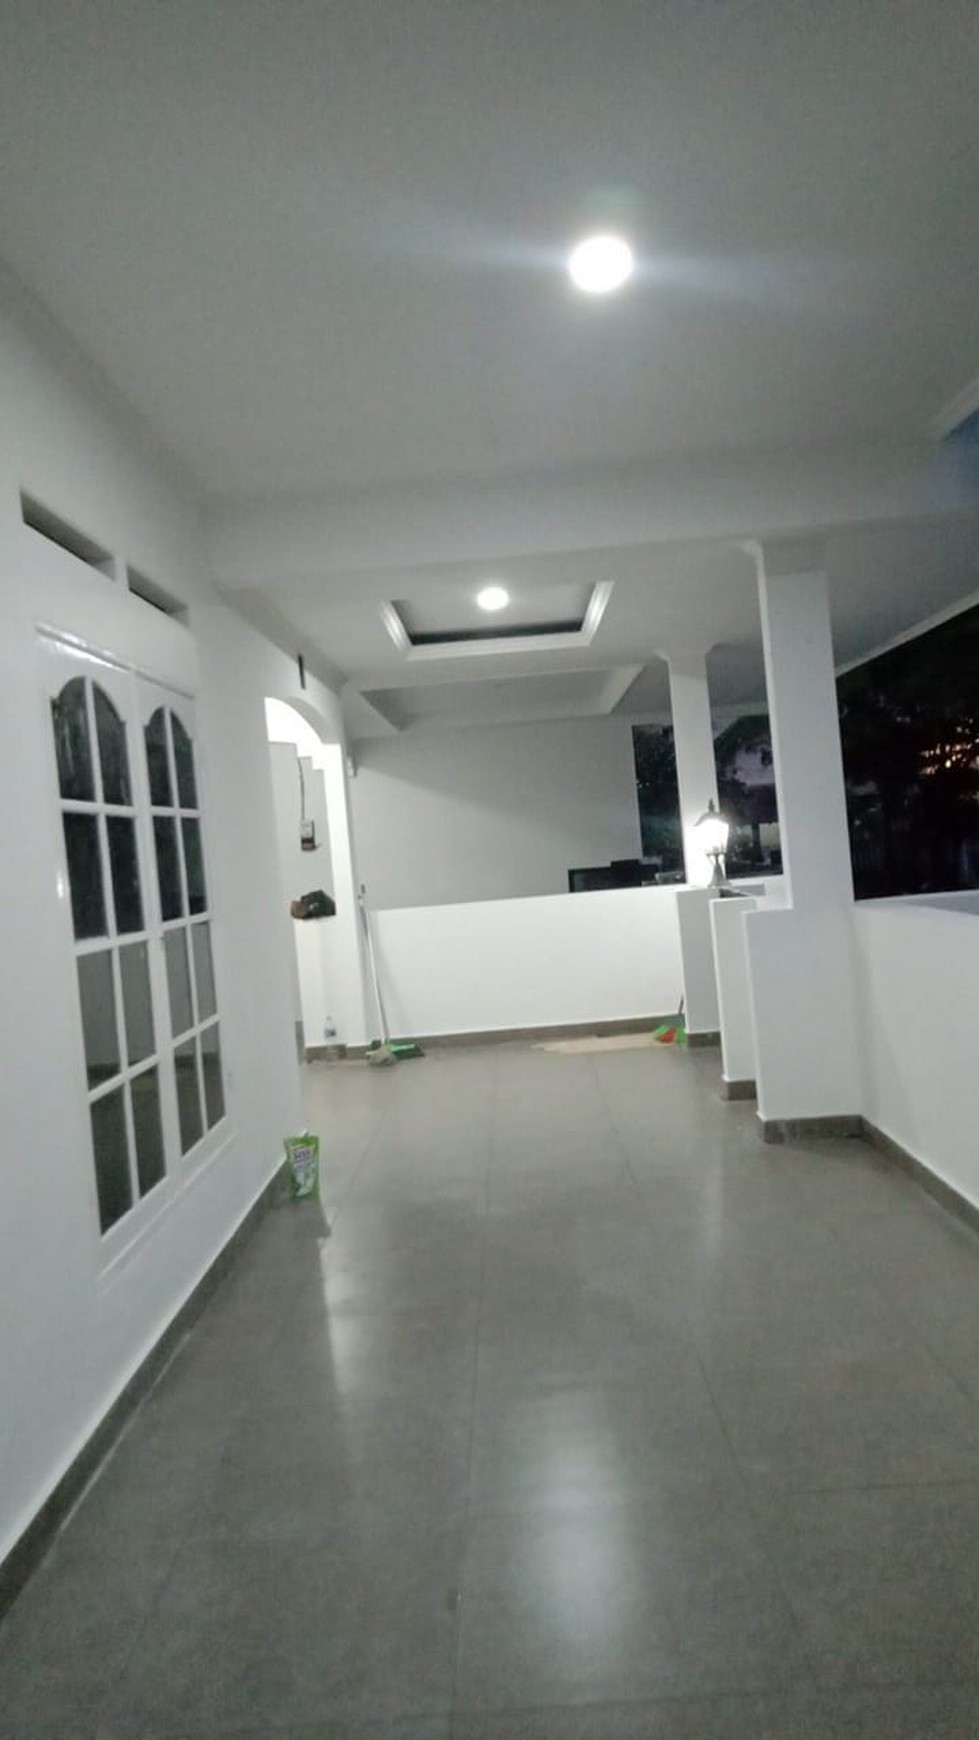 Rumah Rapih, lingkungan aman dan nyaman di Bintaro 